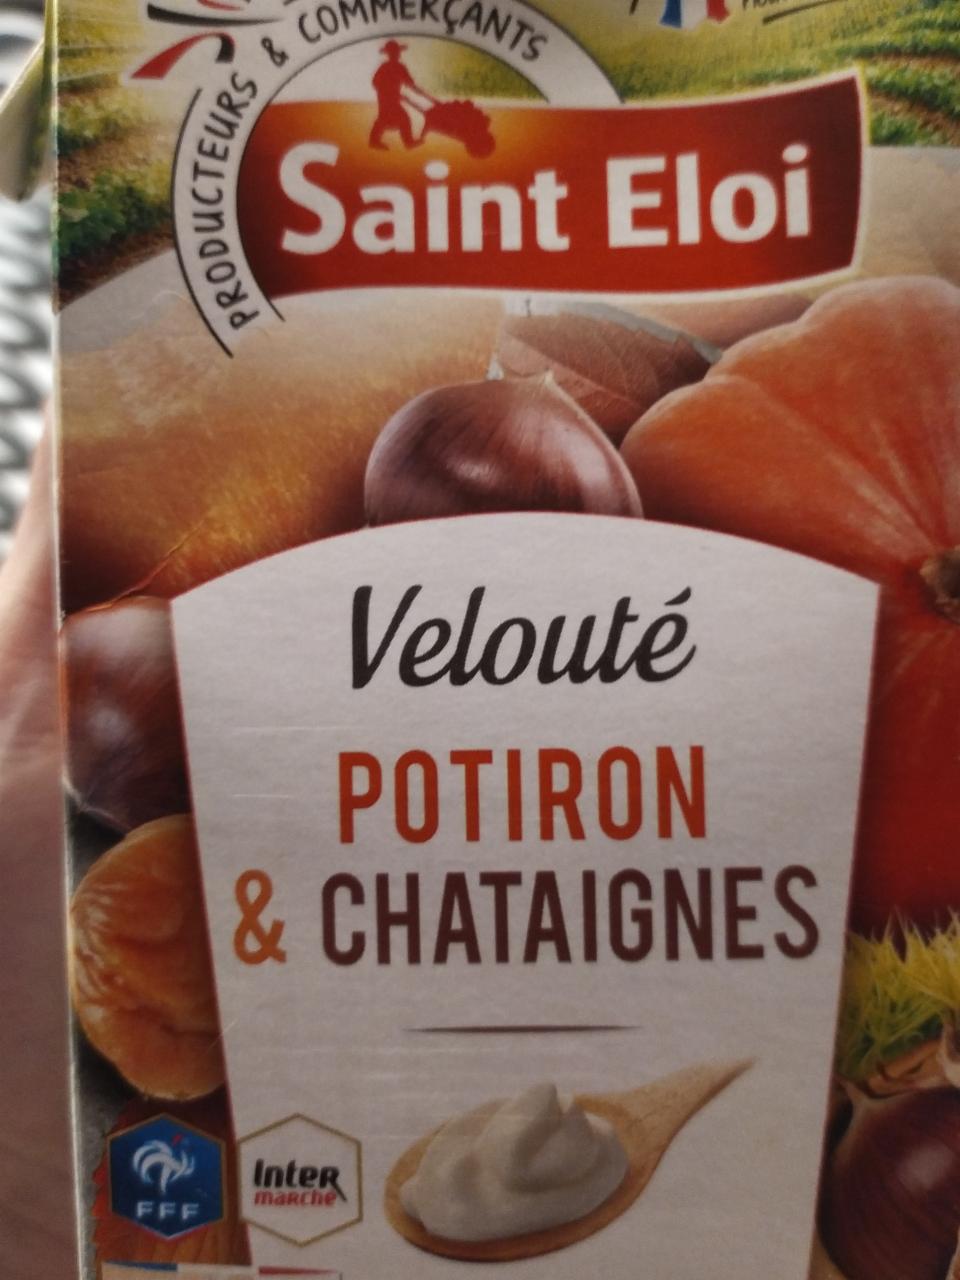 Fotografie - Velouté potiron & châtaignes Saint Eloi